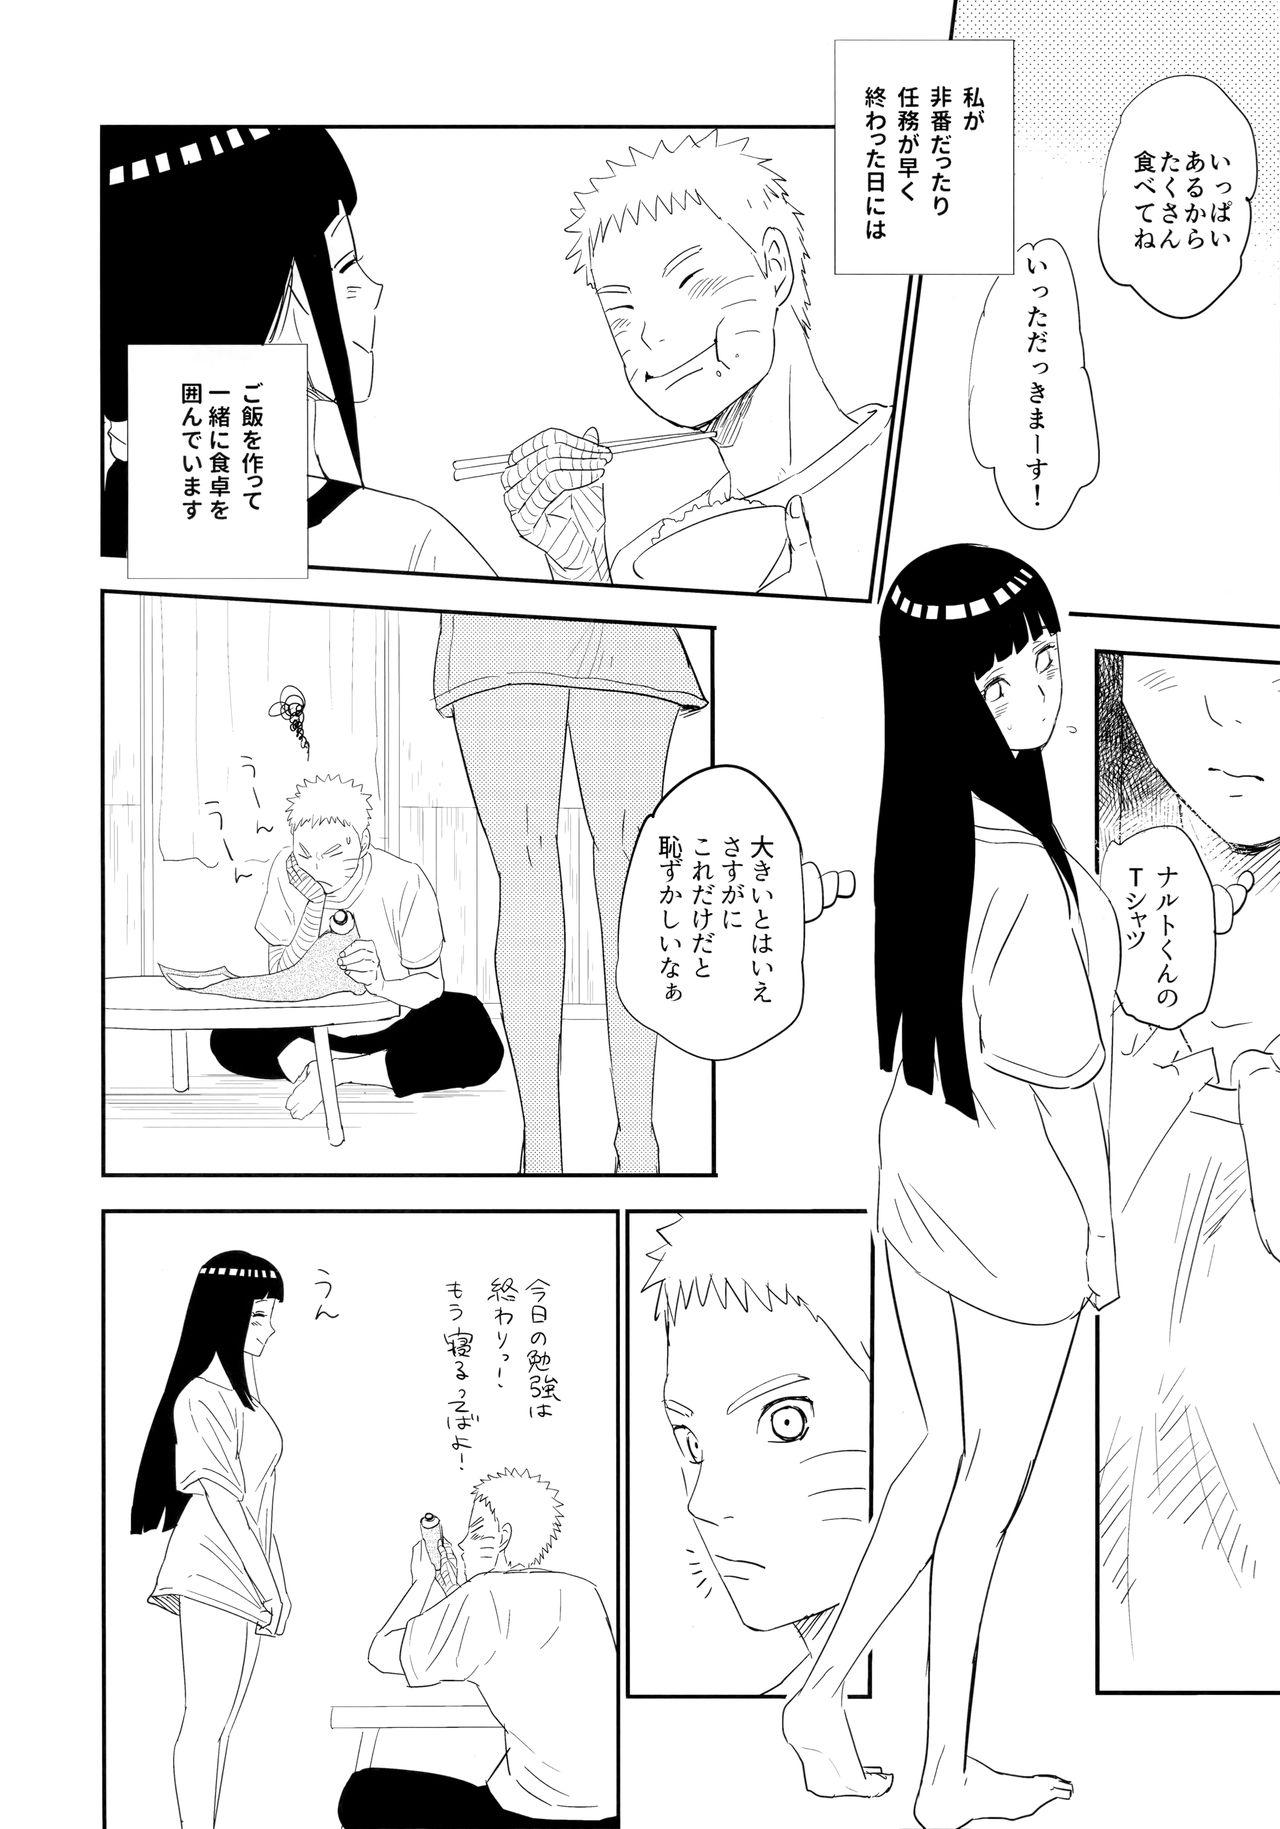 Blonde PRESENT - Naruto 18yo - Page 5